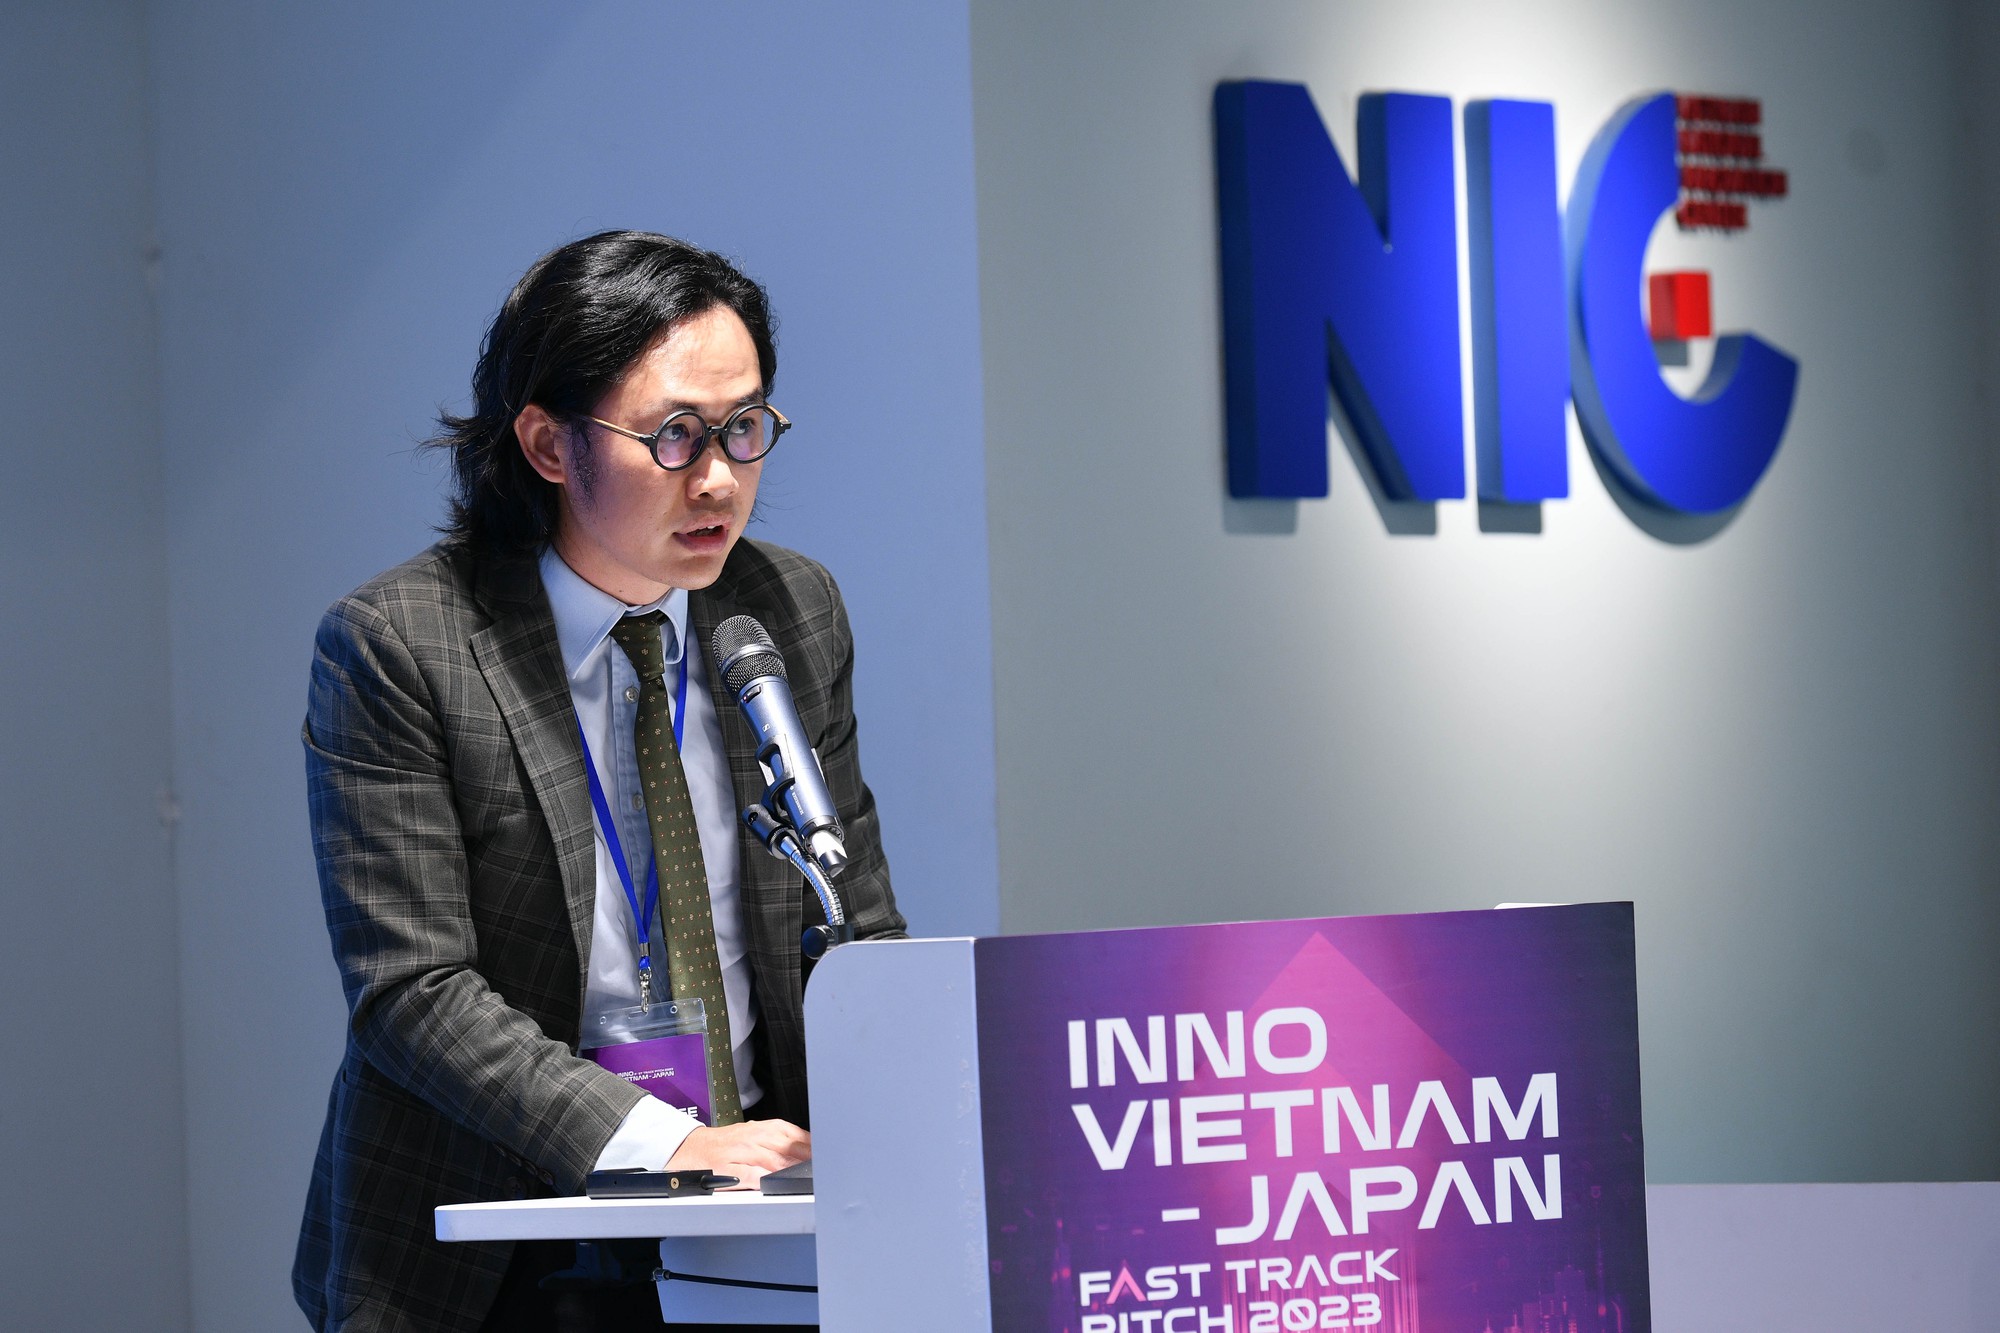 Vingroup, FPT, MoMo và 3 tổ chức lớn của Nhật Bản ra các bài toán khó, hé lộ cơ hội kiếm tiền cho các start up - Ảnh 1.